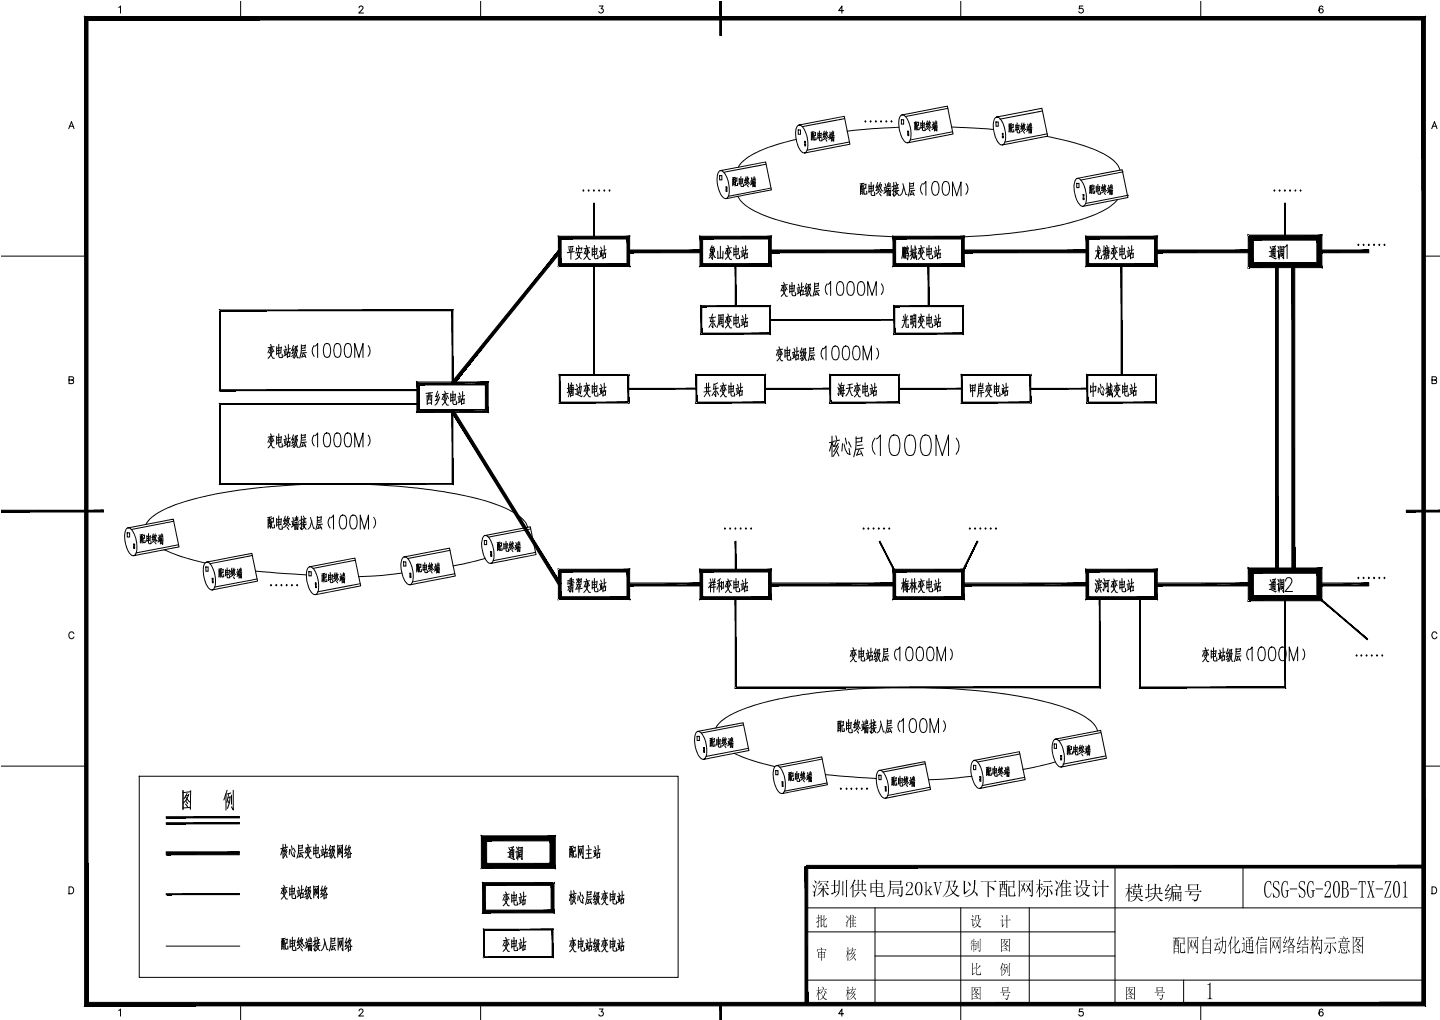 配网自动化通信网络结构示意图